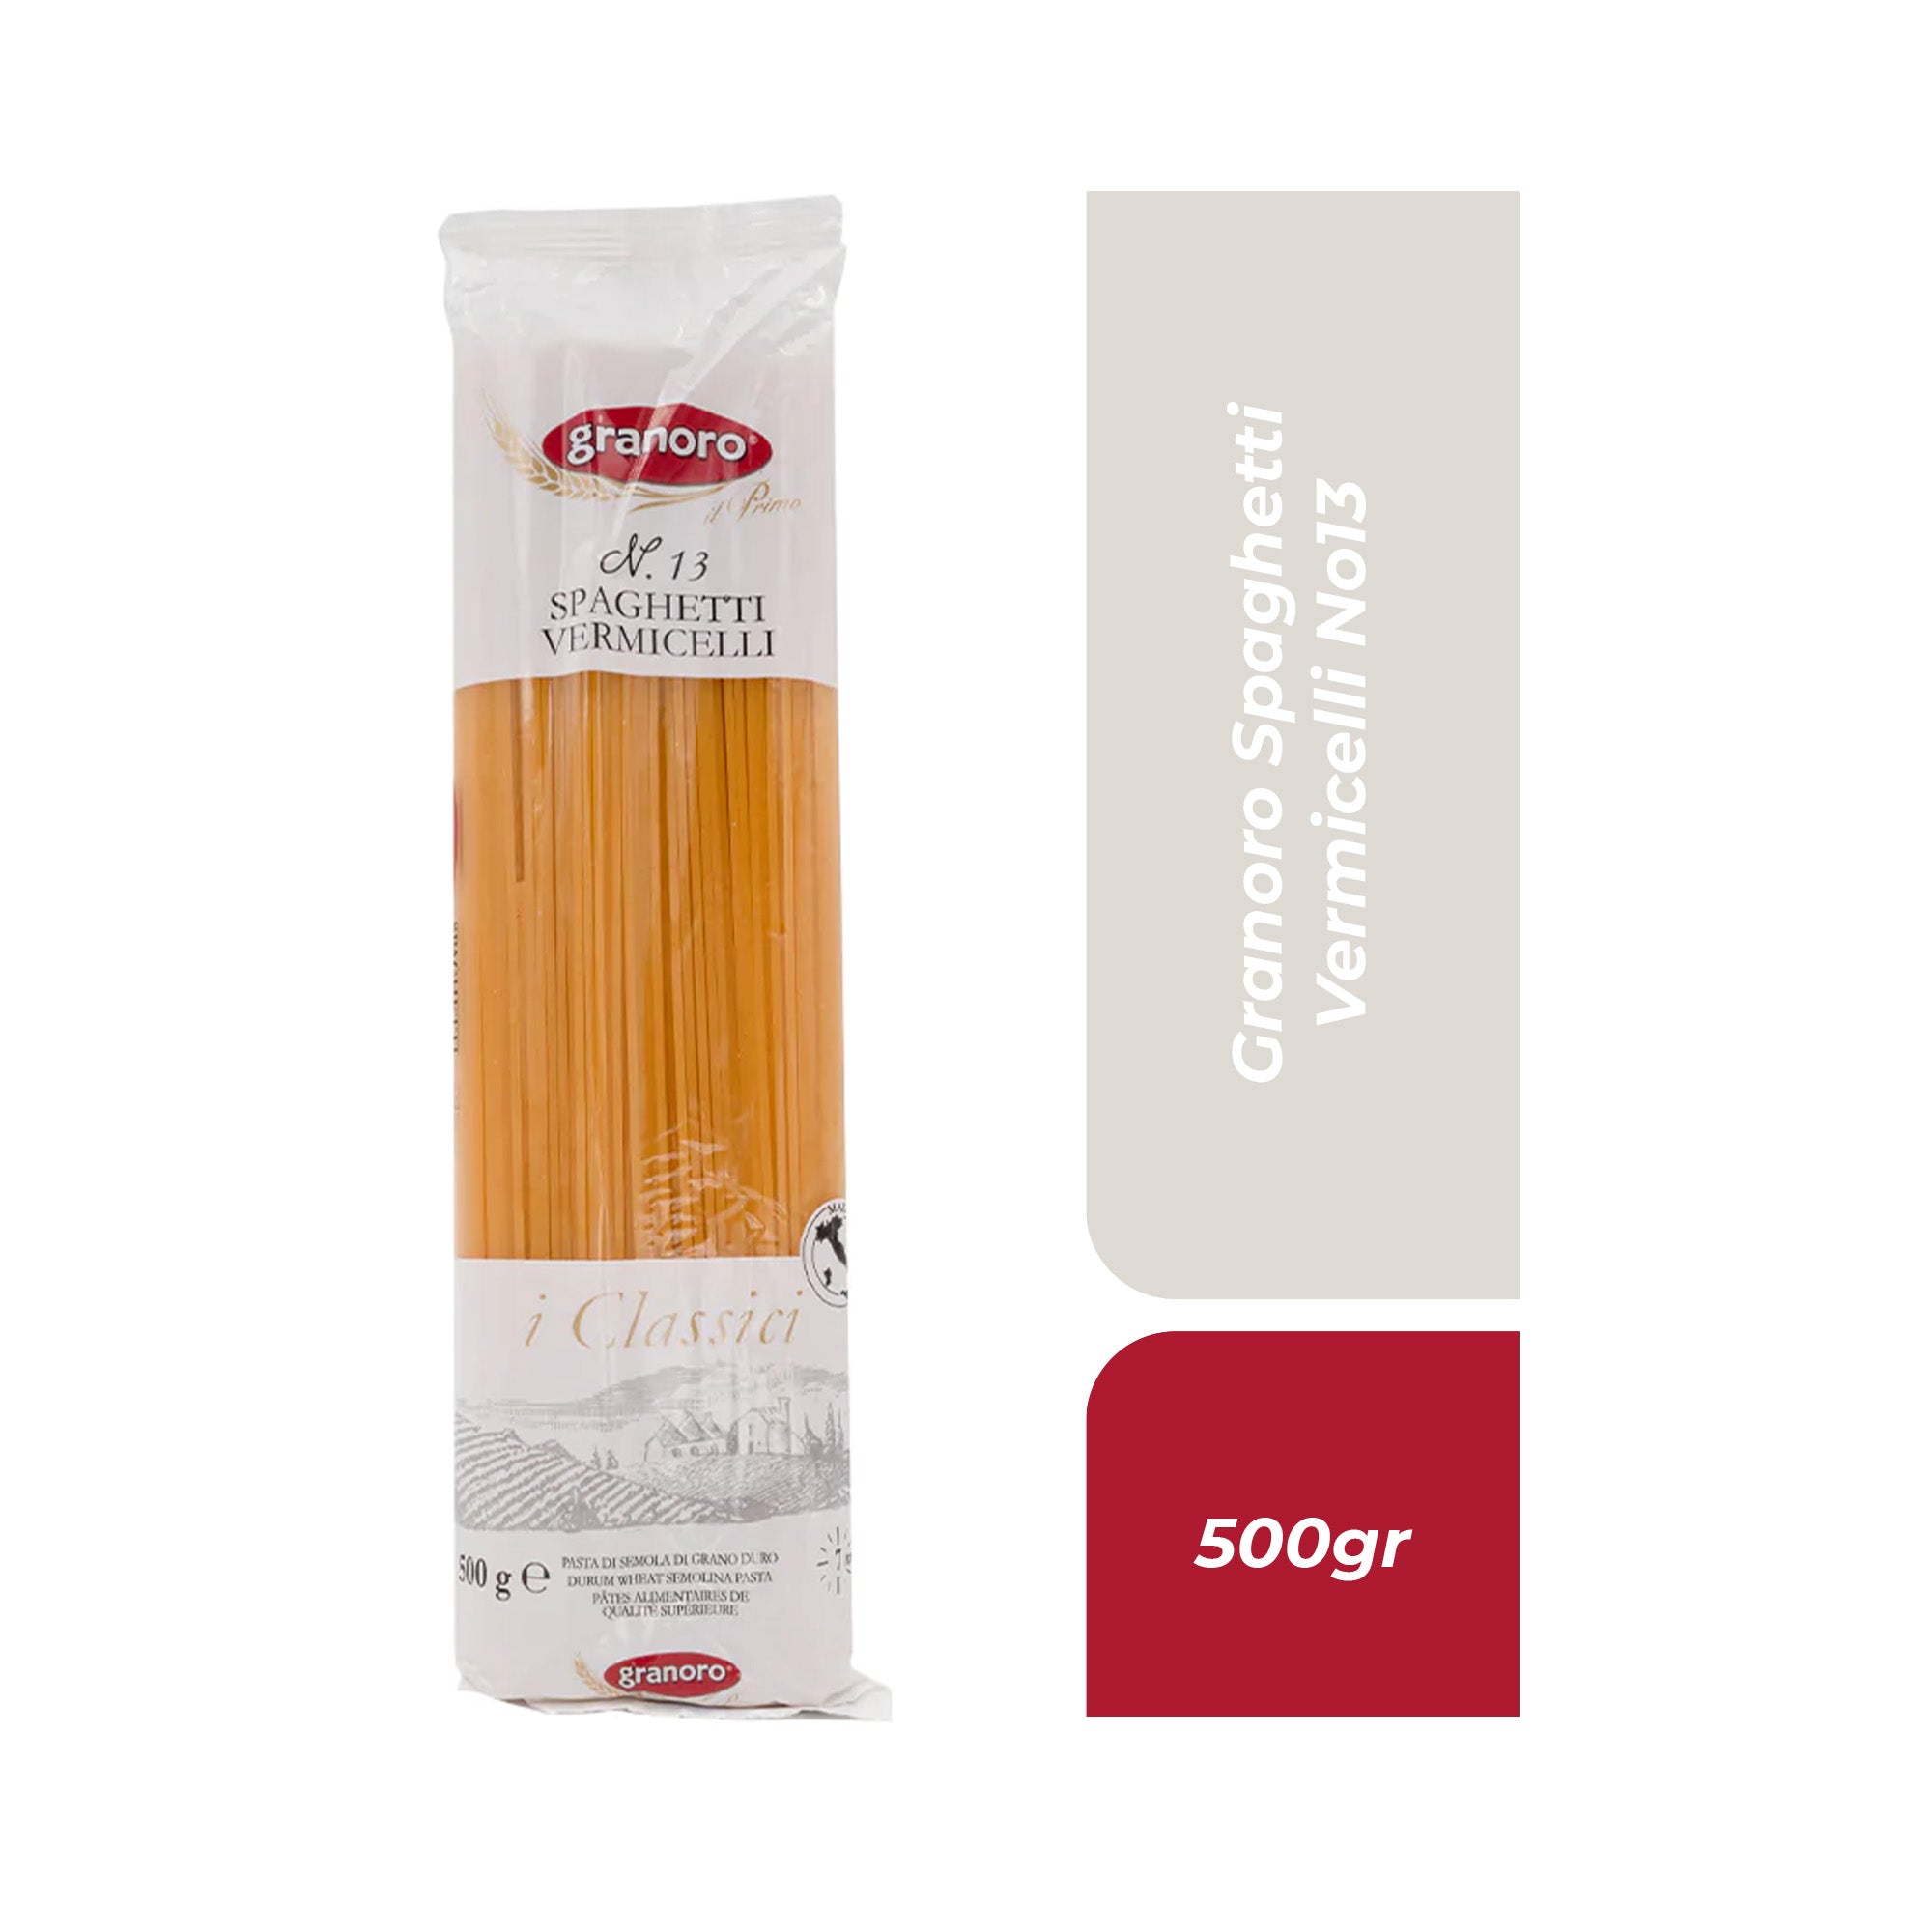 Granoro Spaghetti Vermicelli No13 500gr.